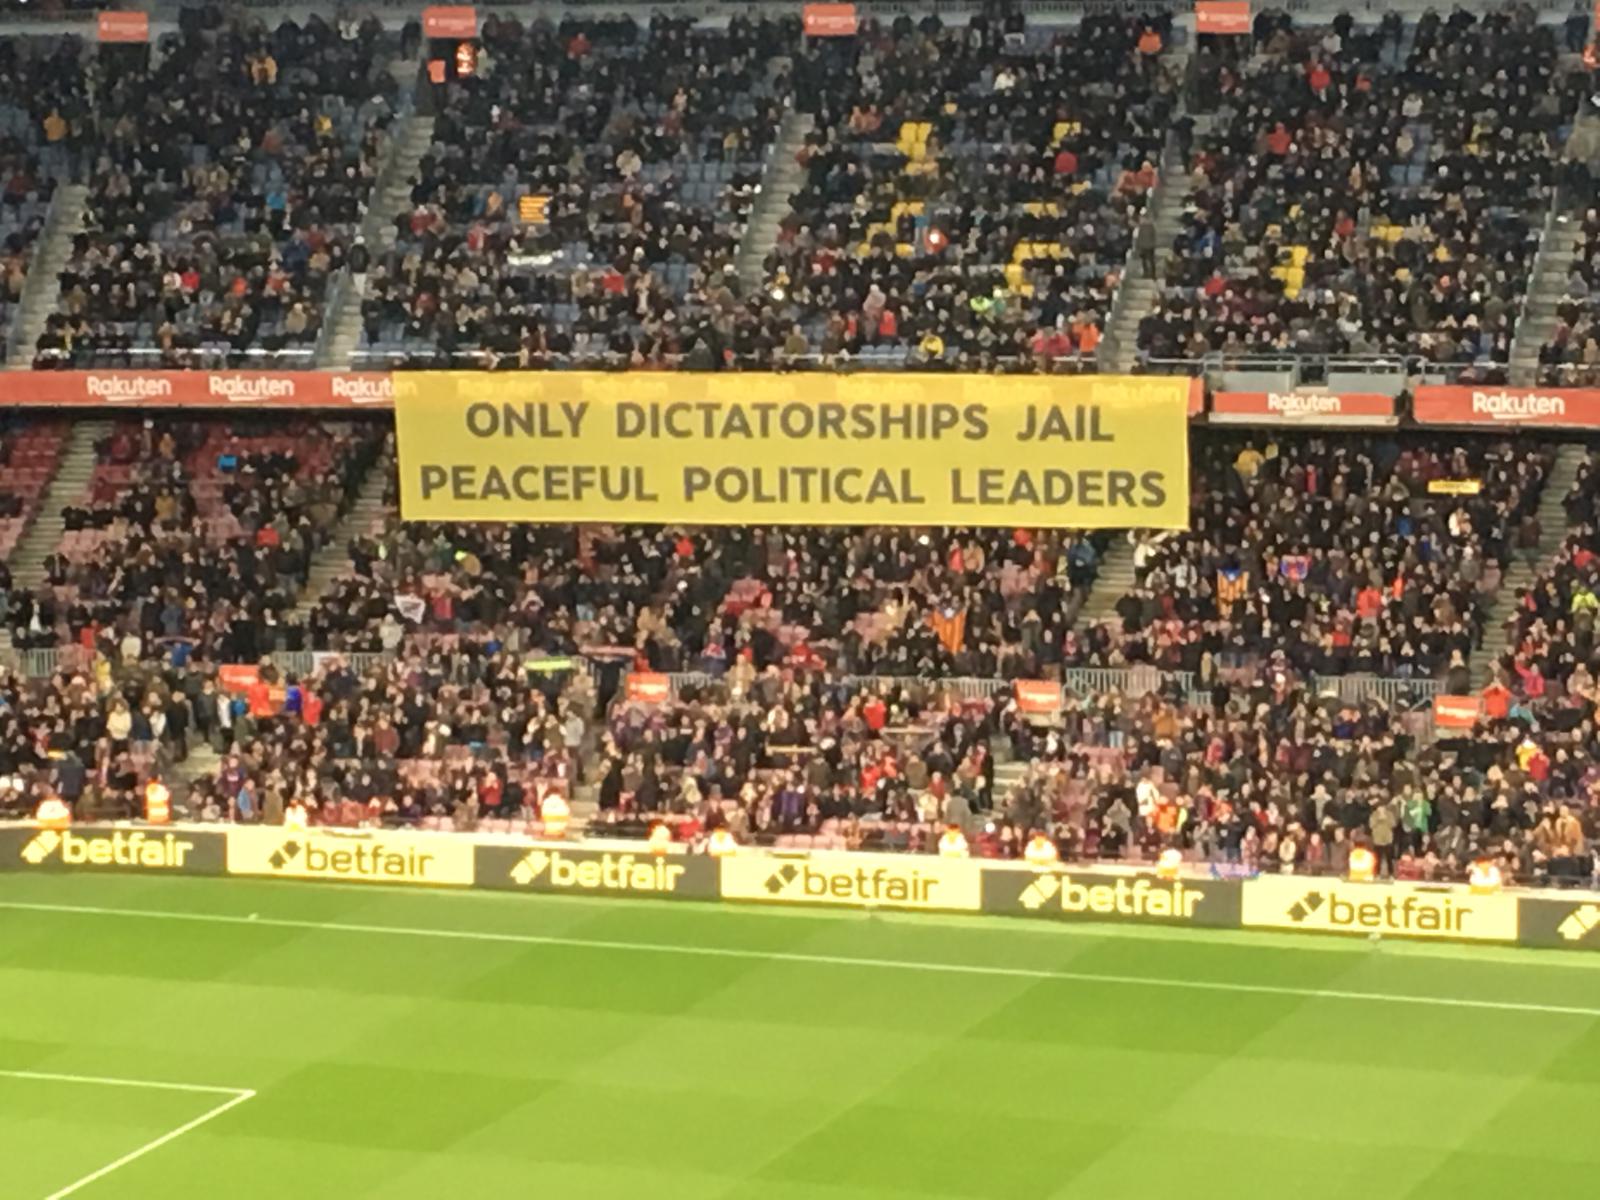 "España es una dictadura": la pancarta que irrita a un periodista español